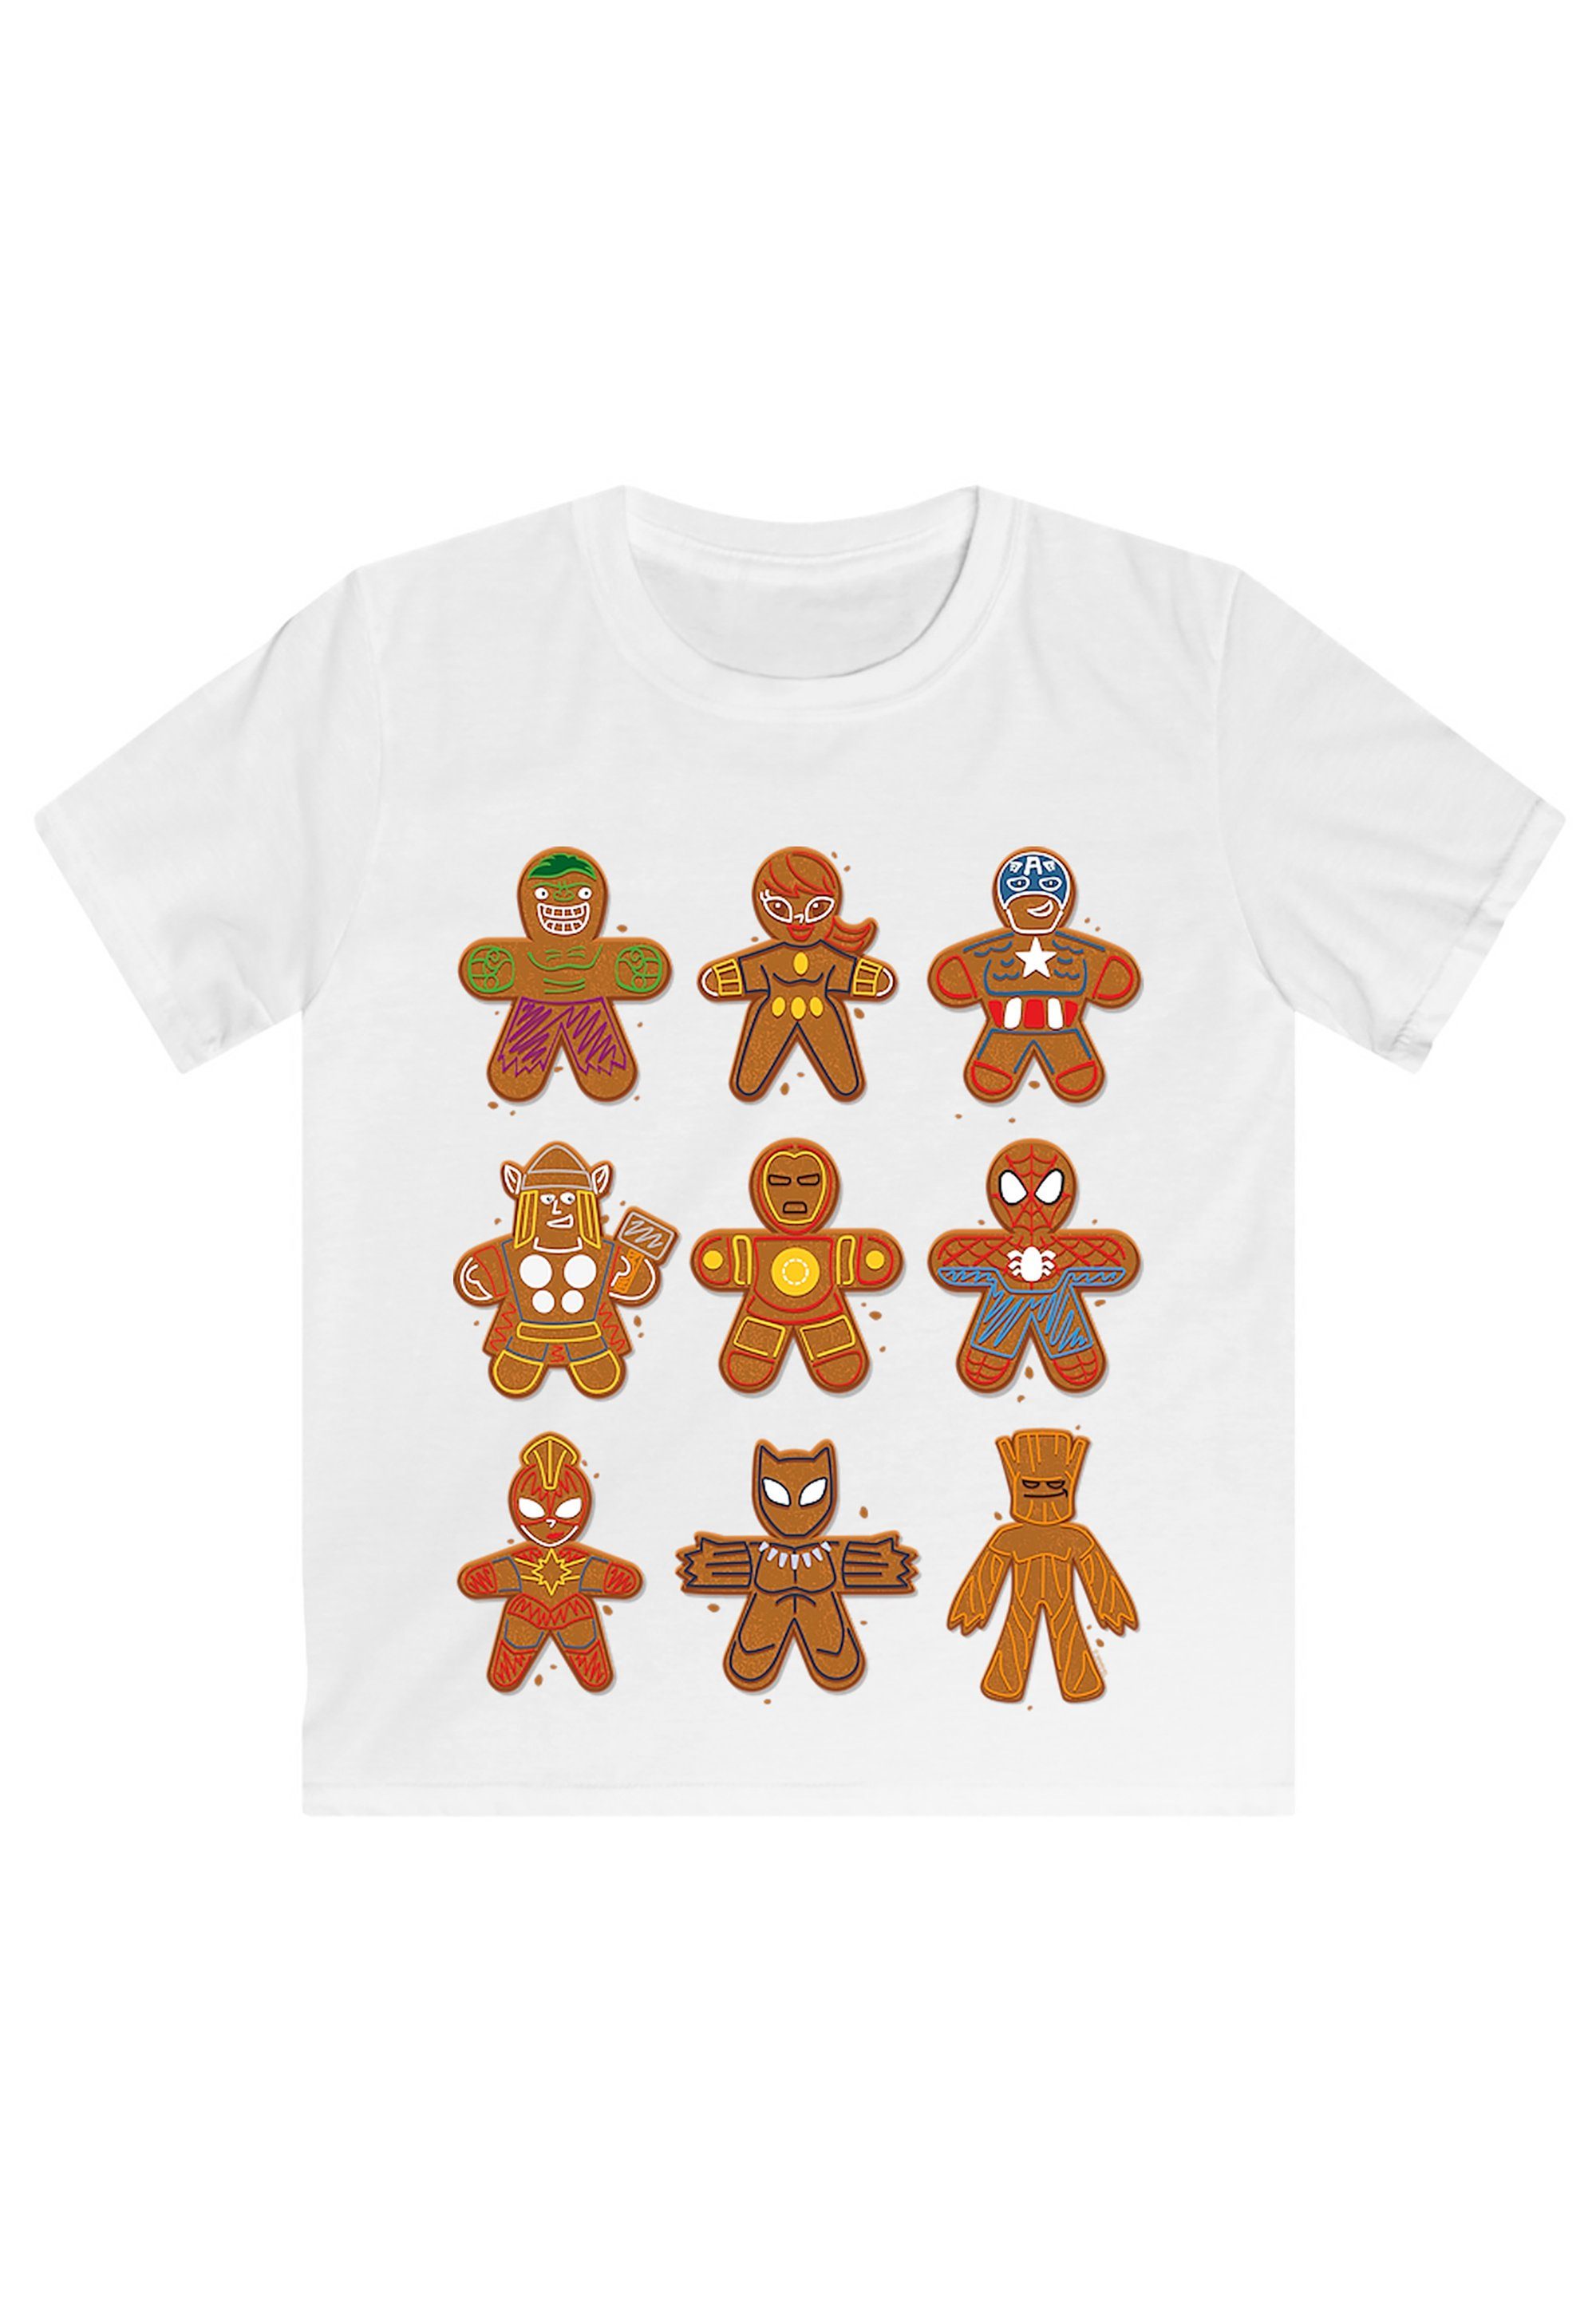 F4NT4STIC T-Shirt Marvel Universe Weihnachten Lebkuchen Avengers Fan Merch  Print